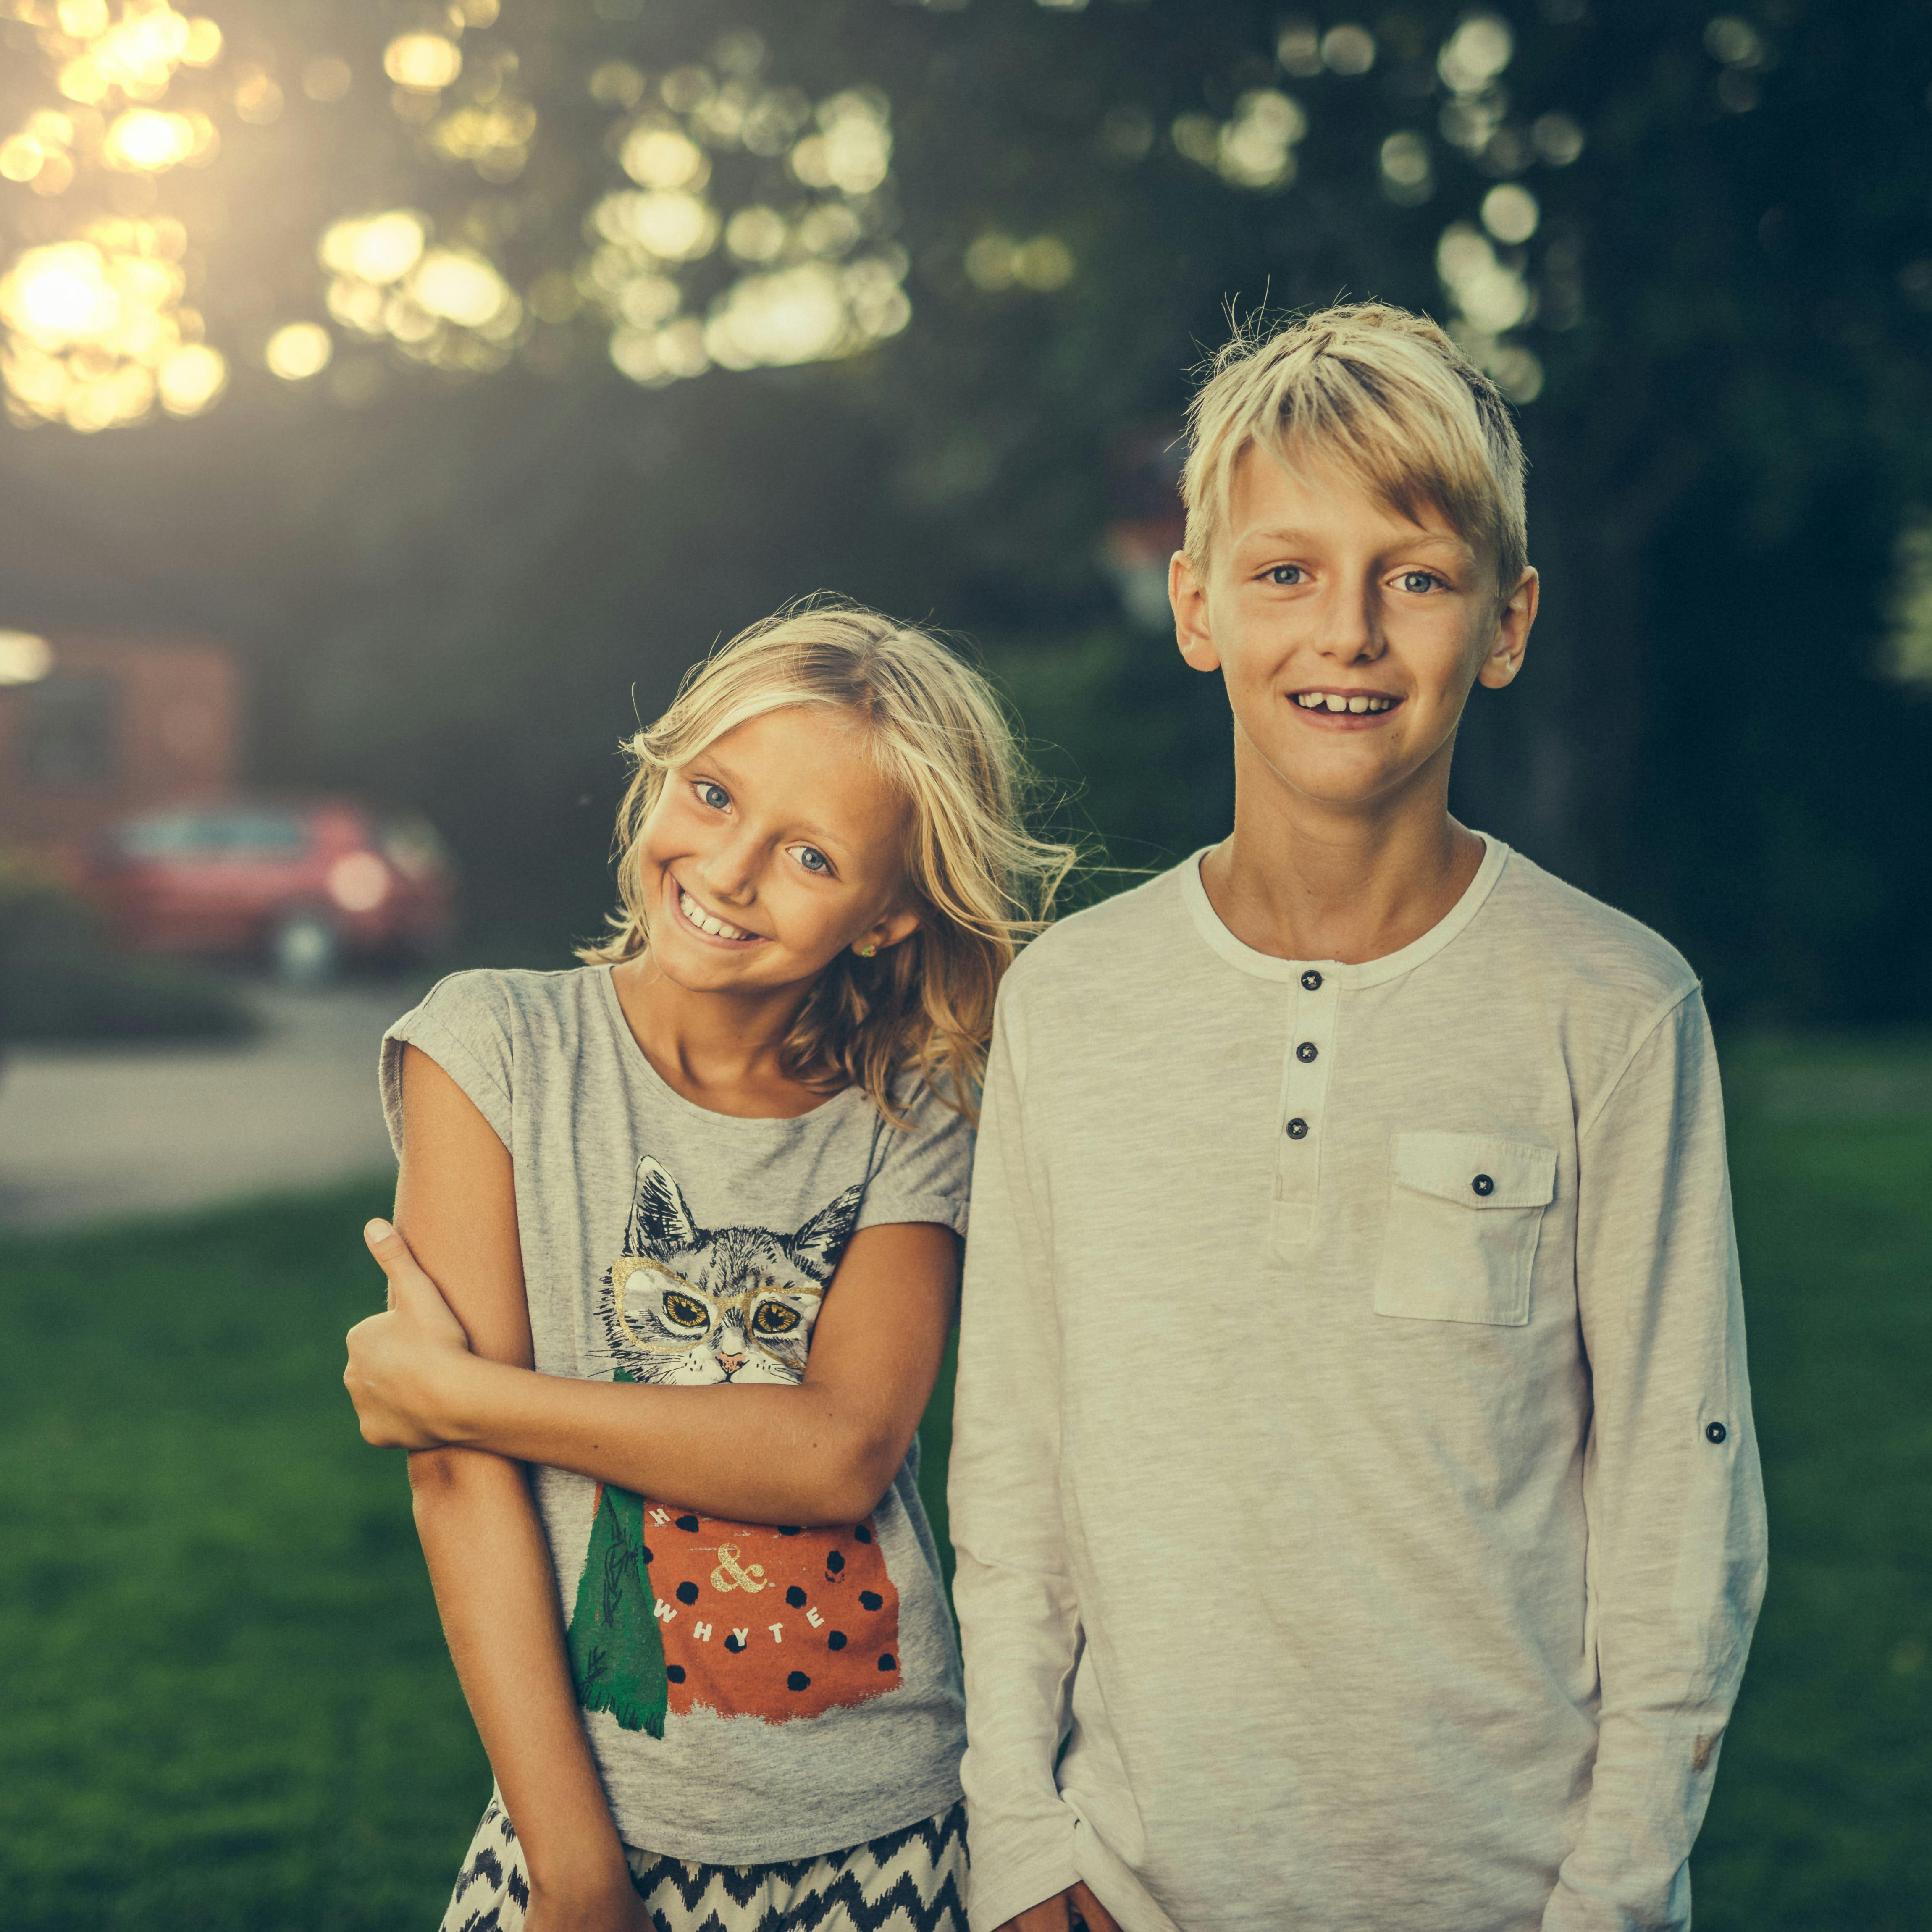 Un frère et une sœur souriant en se tenant côte à côte | Source : Pexels